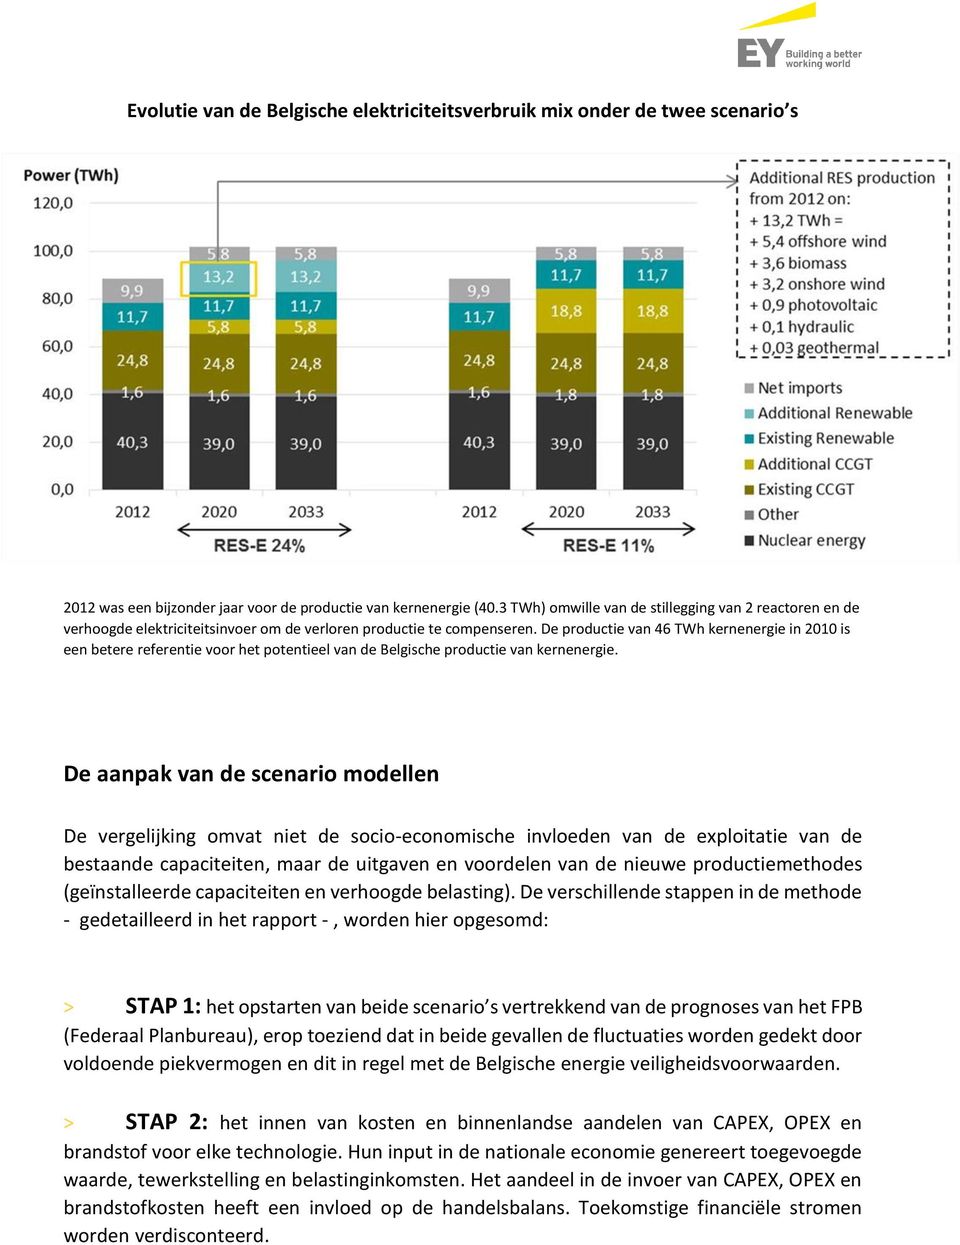 De productie van 46 TWh kernenergie in 2010 is een betere referentie voor het potentieel van de Belgische productie van kernenergie.